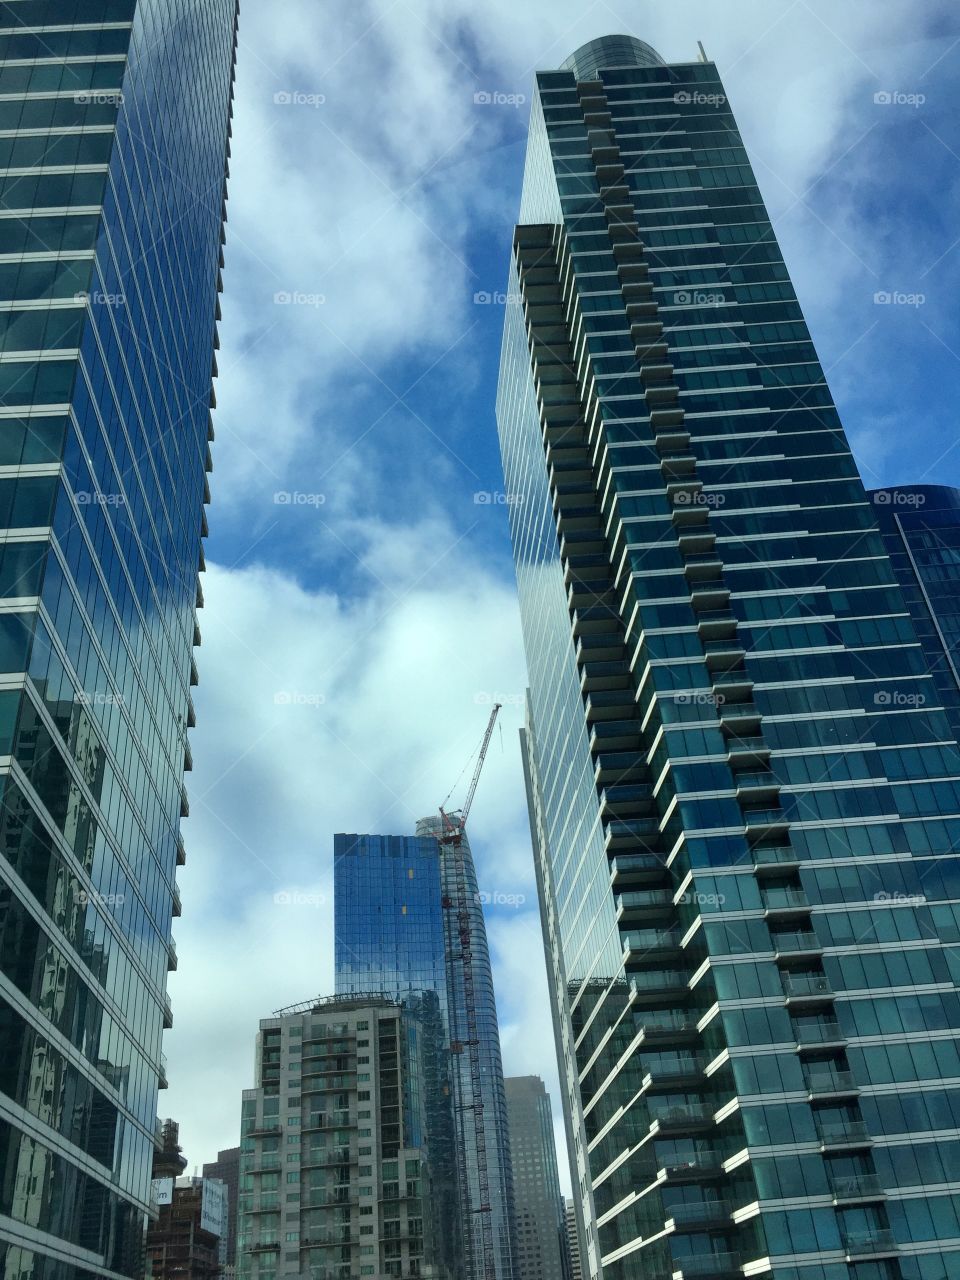 Skyscrapers 